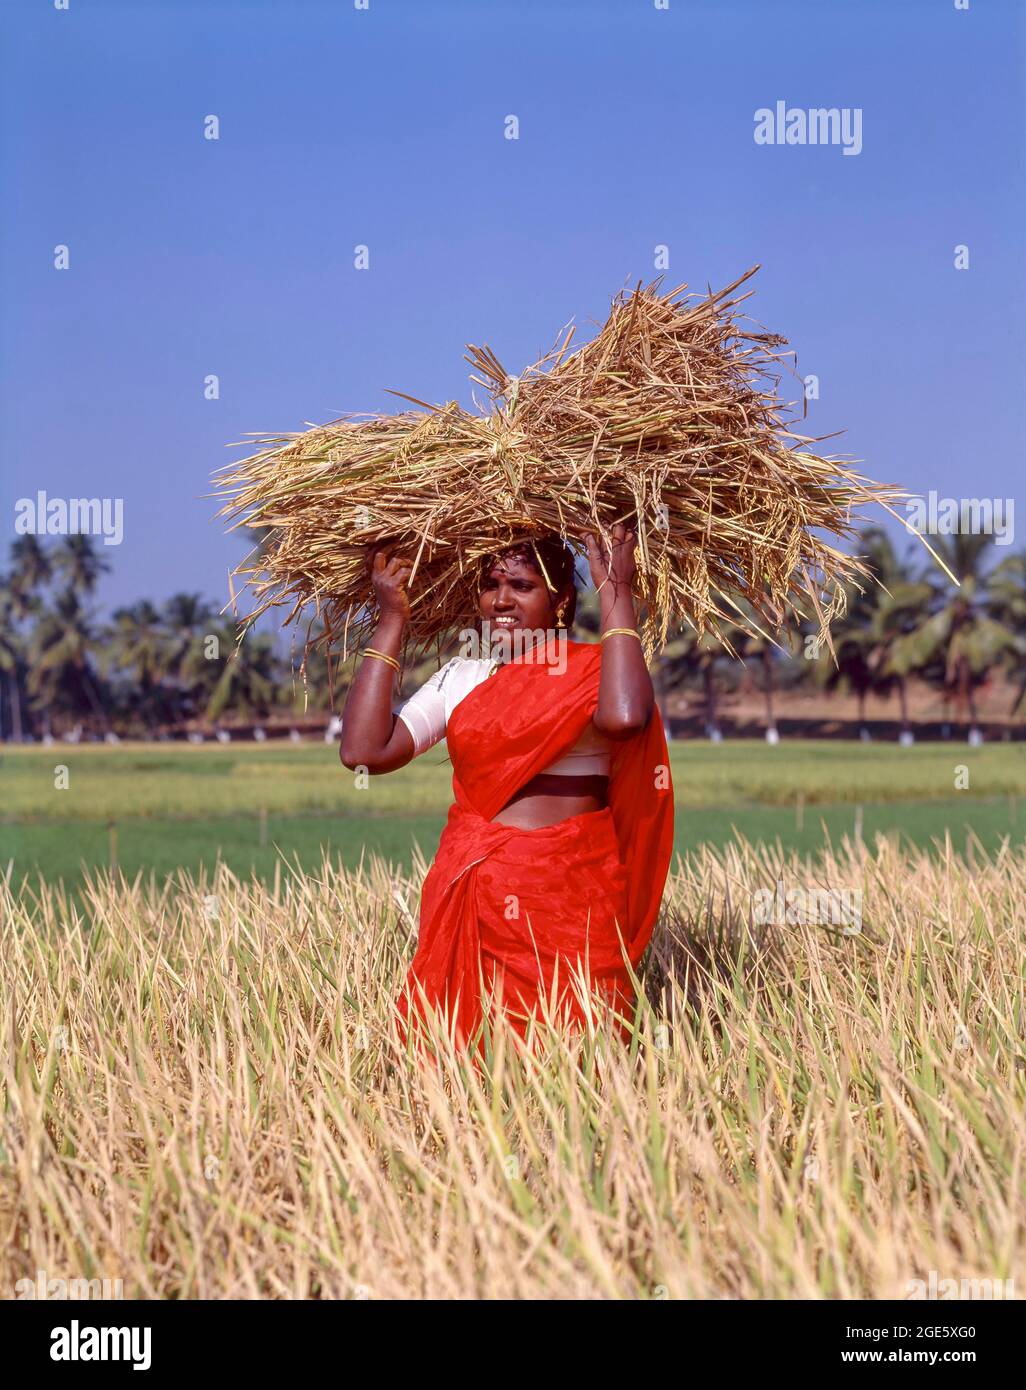 Frau, die ein paar Garben mit Reis auf dem Kopf hält und auf einem Reisfeld steht, Coimbatore, Tamil Nadu, Indien Stockfoto